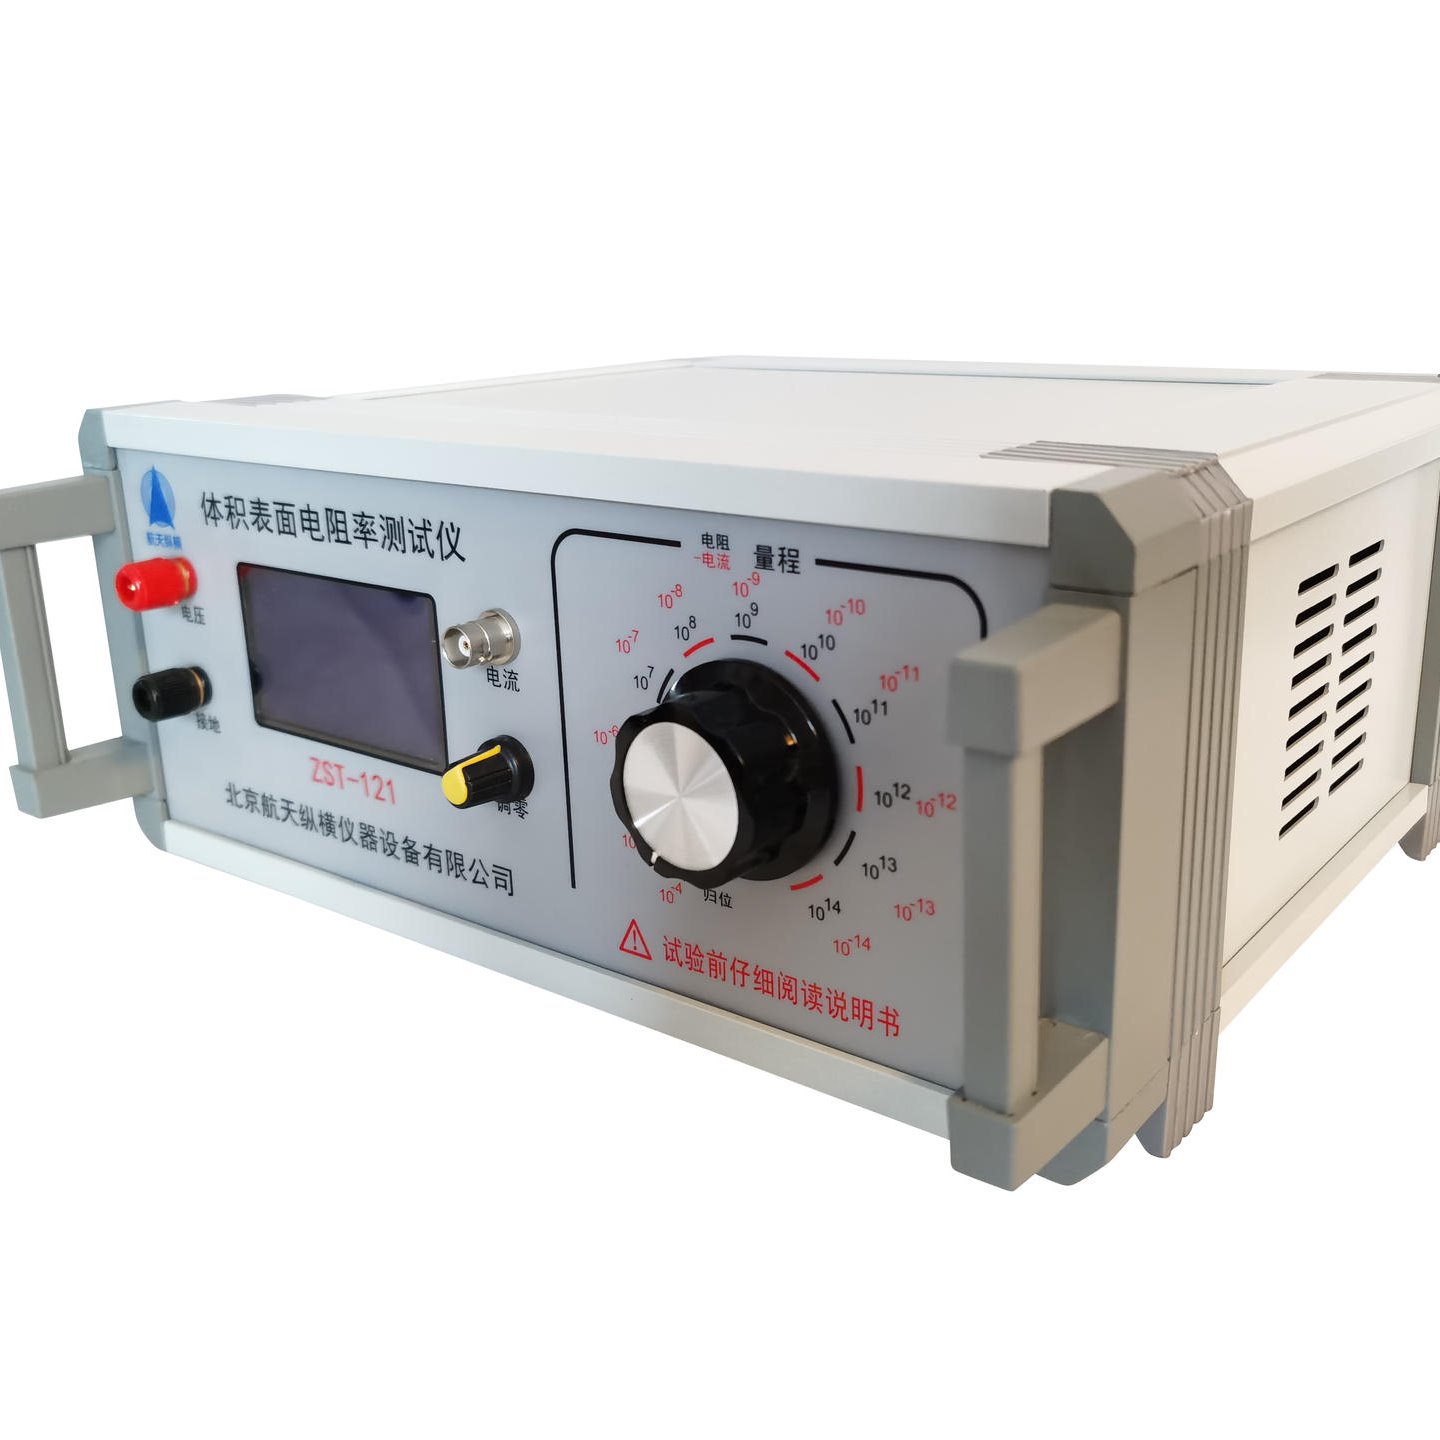 介电常数测试仪 介质损耗测试仪 微波介电常数测试仪 北京厂家